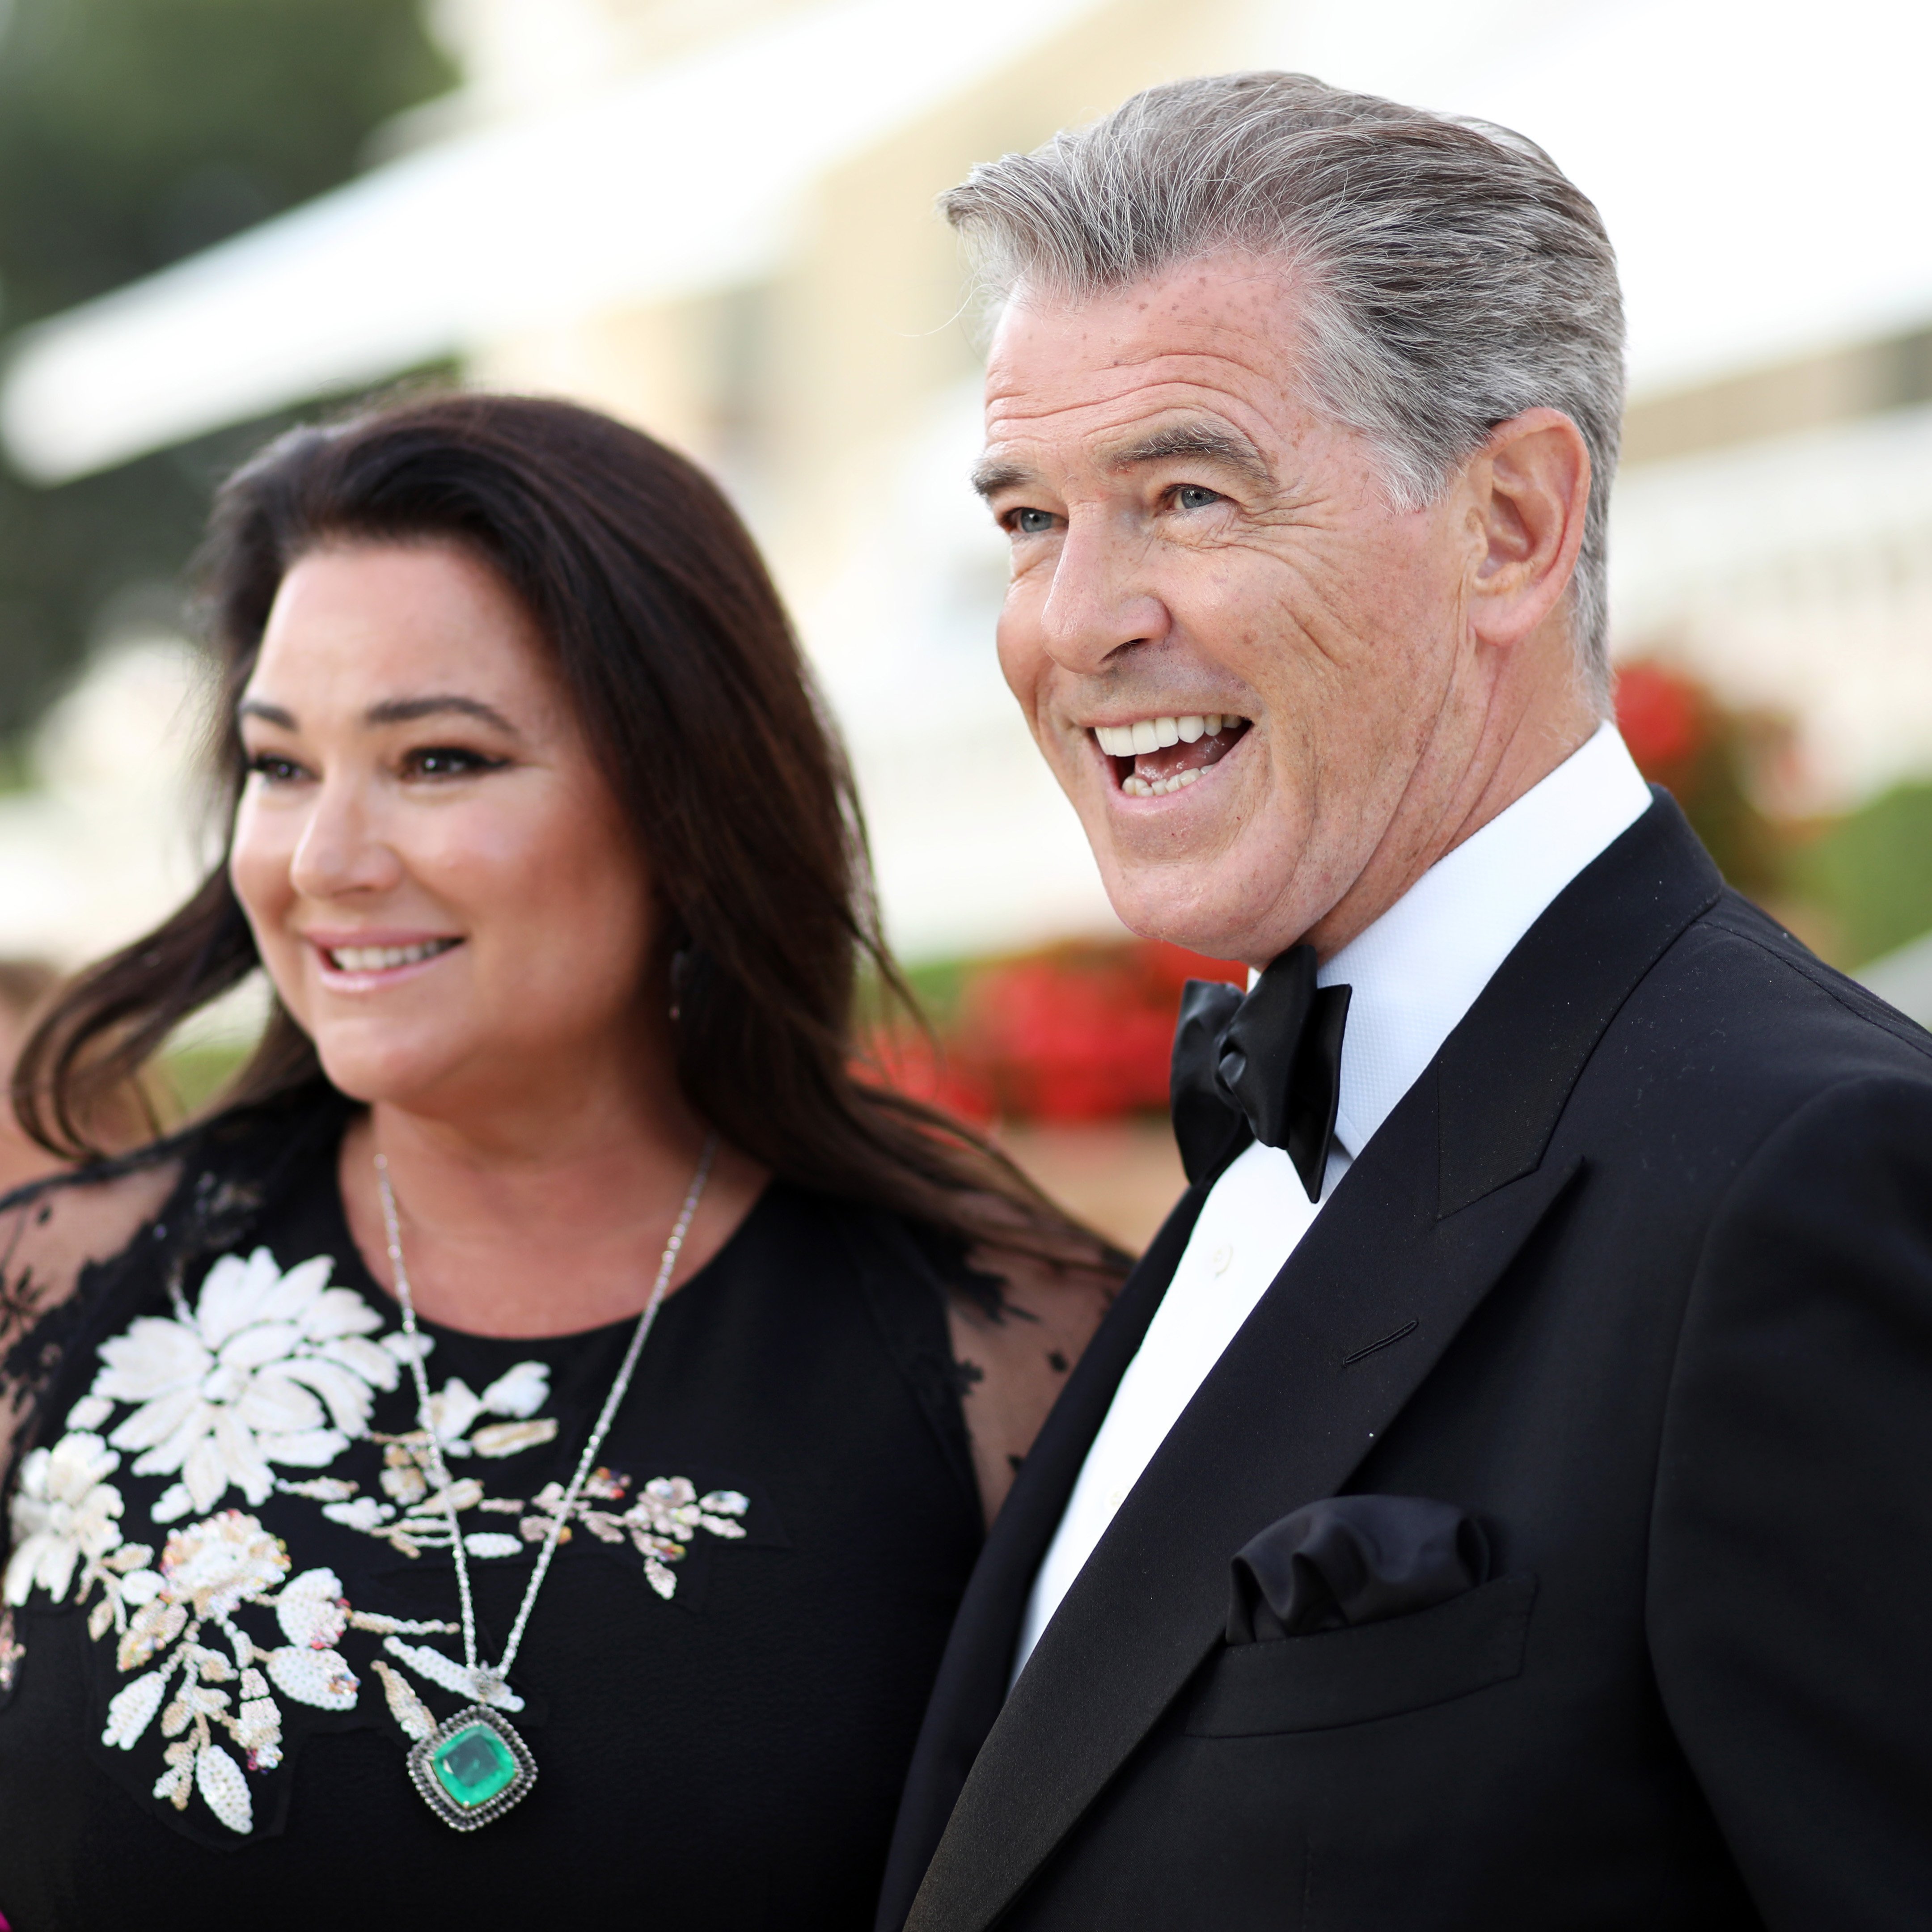 Pierce Brosnan et son épouse Keely Shaye Smith assistent au cocktail du Gala amfAR Cannes 2018 | Source : Getty Images